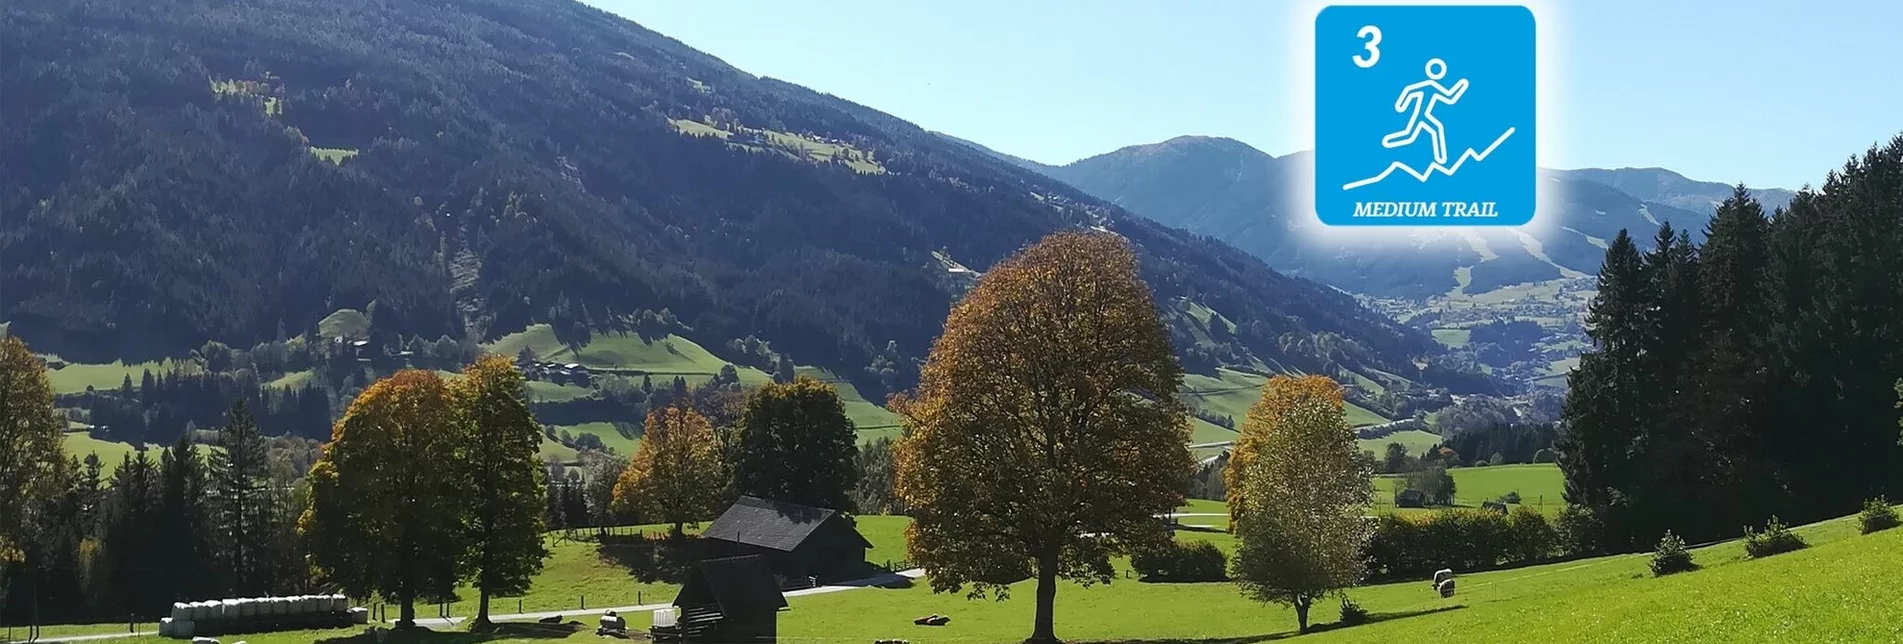 Trailrunning Birnberg Trail (Nr. 3) - Touren-Impression #1 | © Erlebnisregion Schladming-Dachstein